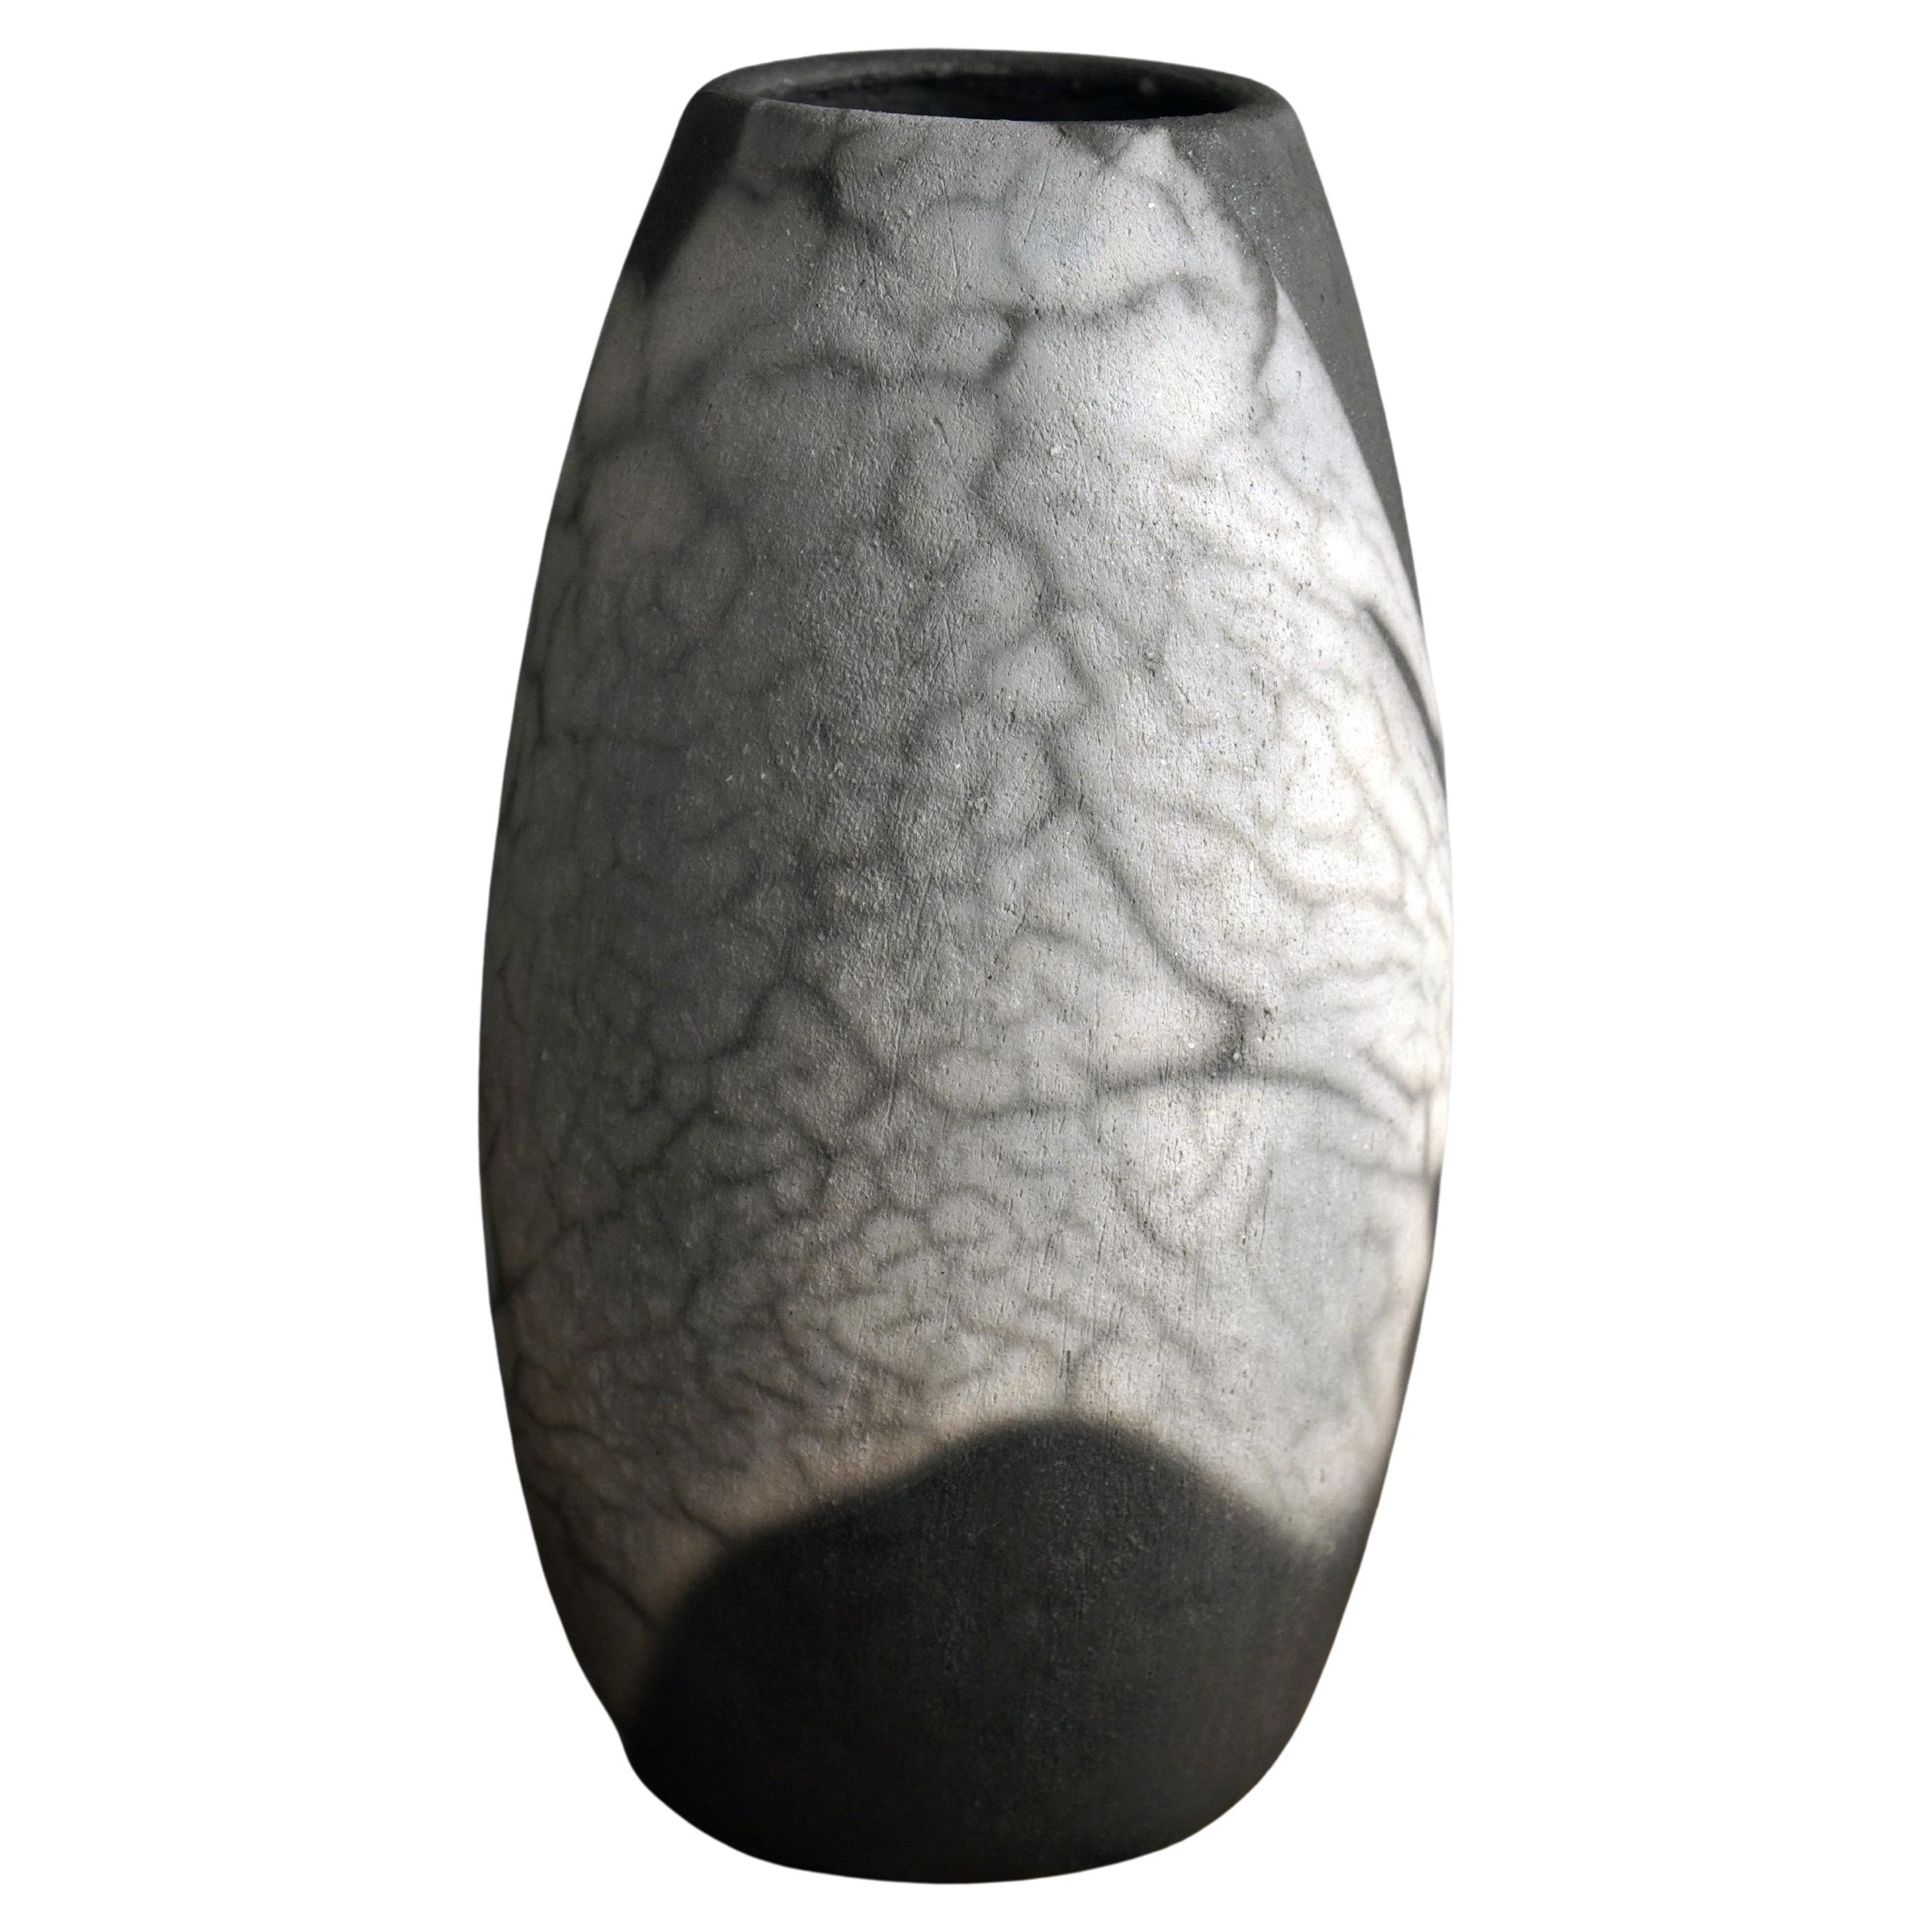 Tsuri Raku Pottery Vase, Smoked Raku, Handmade Ceramic Home Decor Gift For Sale